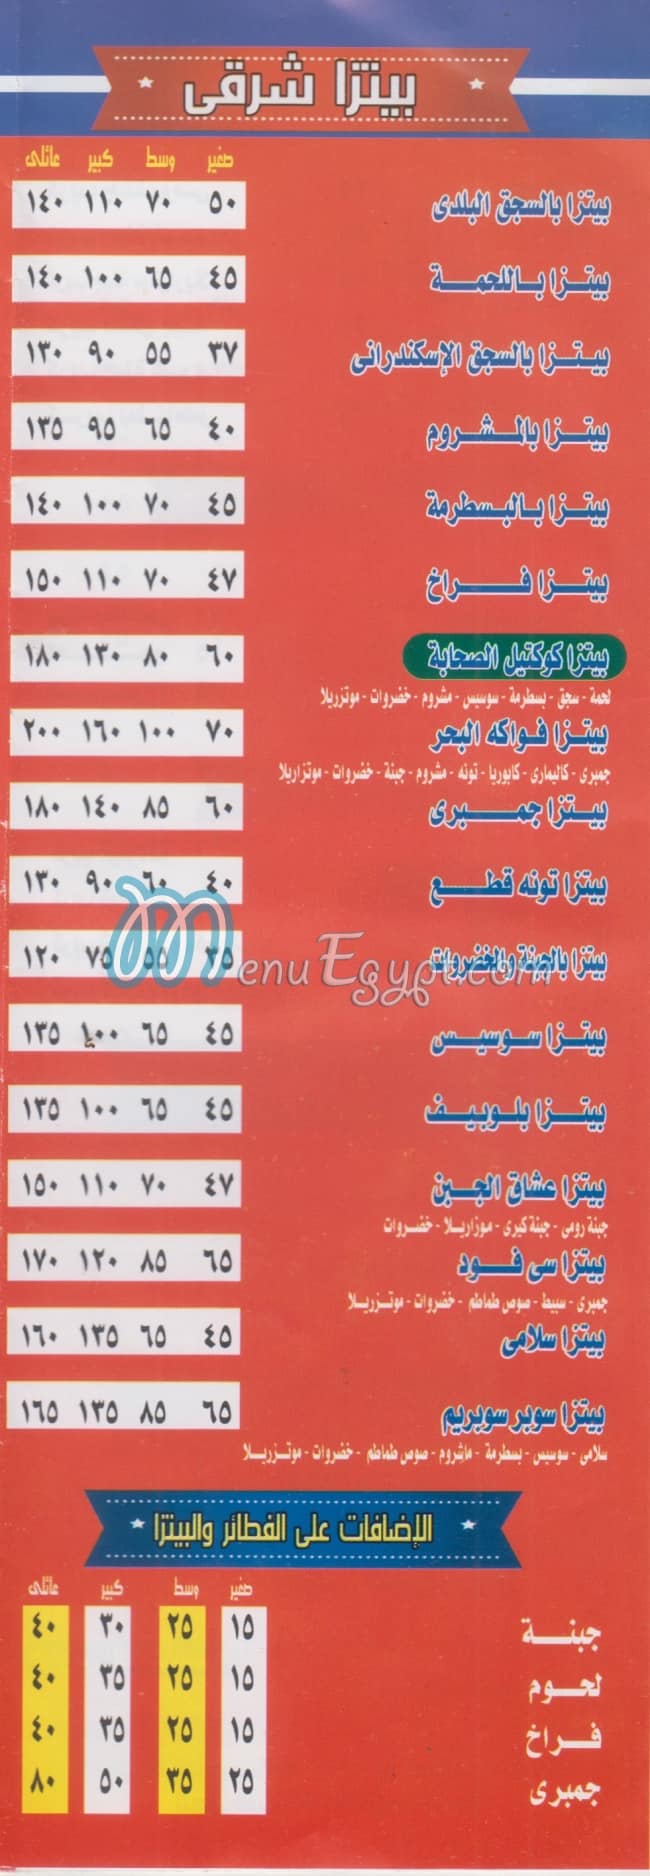 El Sahaba online menu